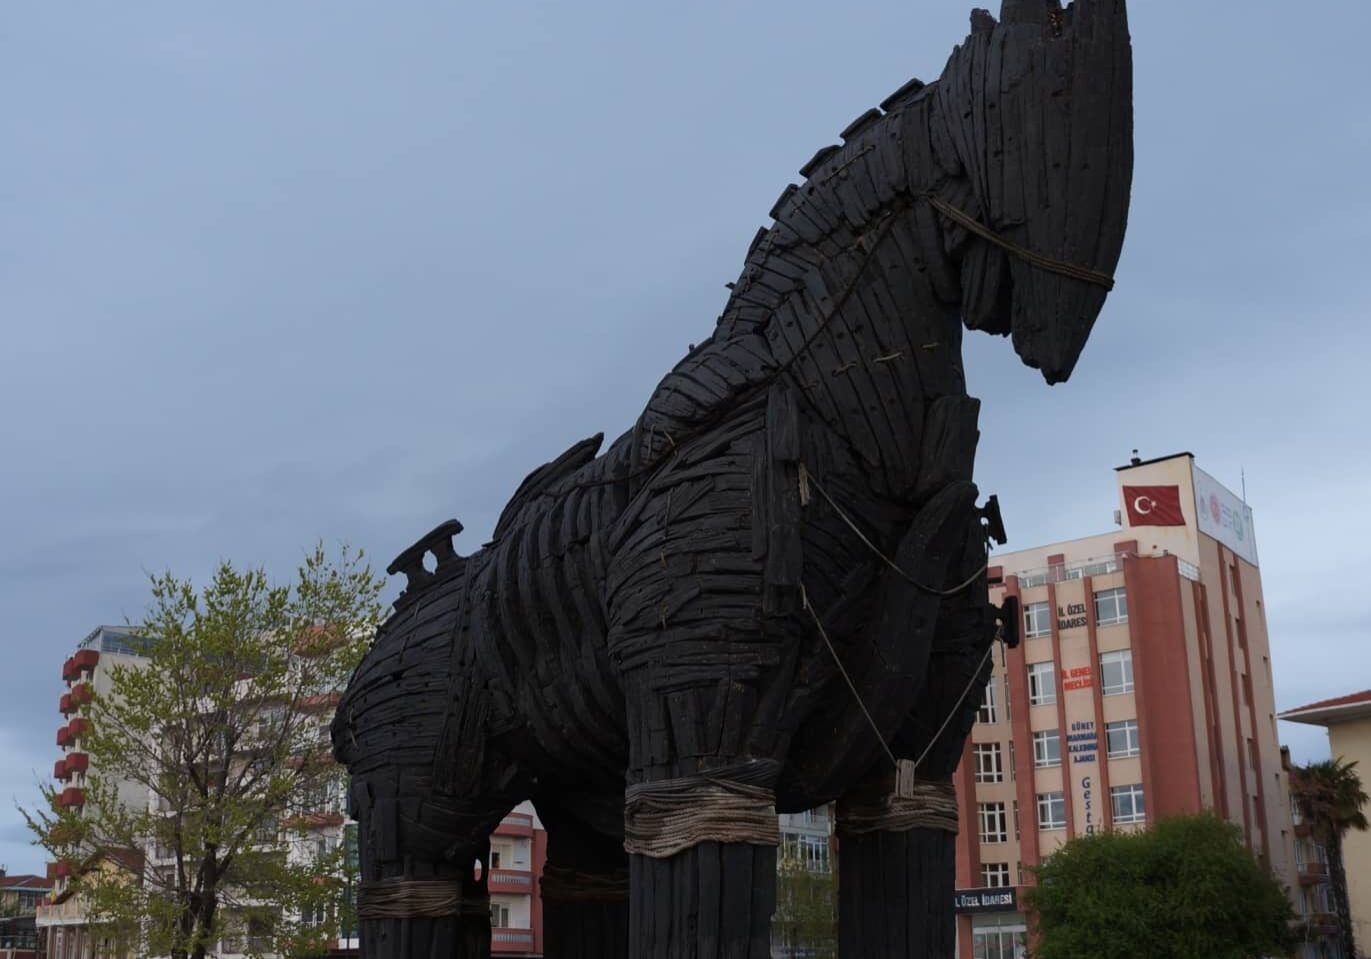 maketa Trojského koně, na náměstí města Canakkale na Asijské části Turecka